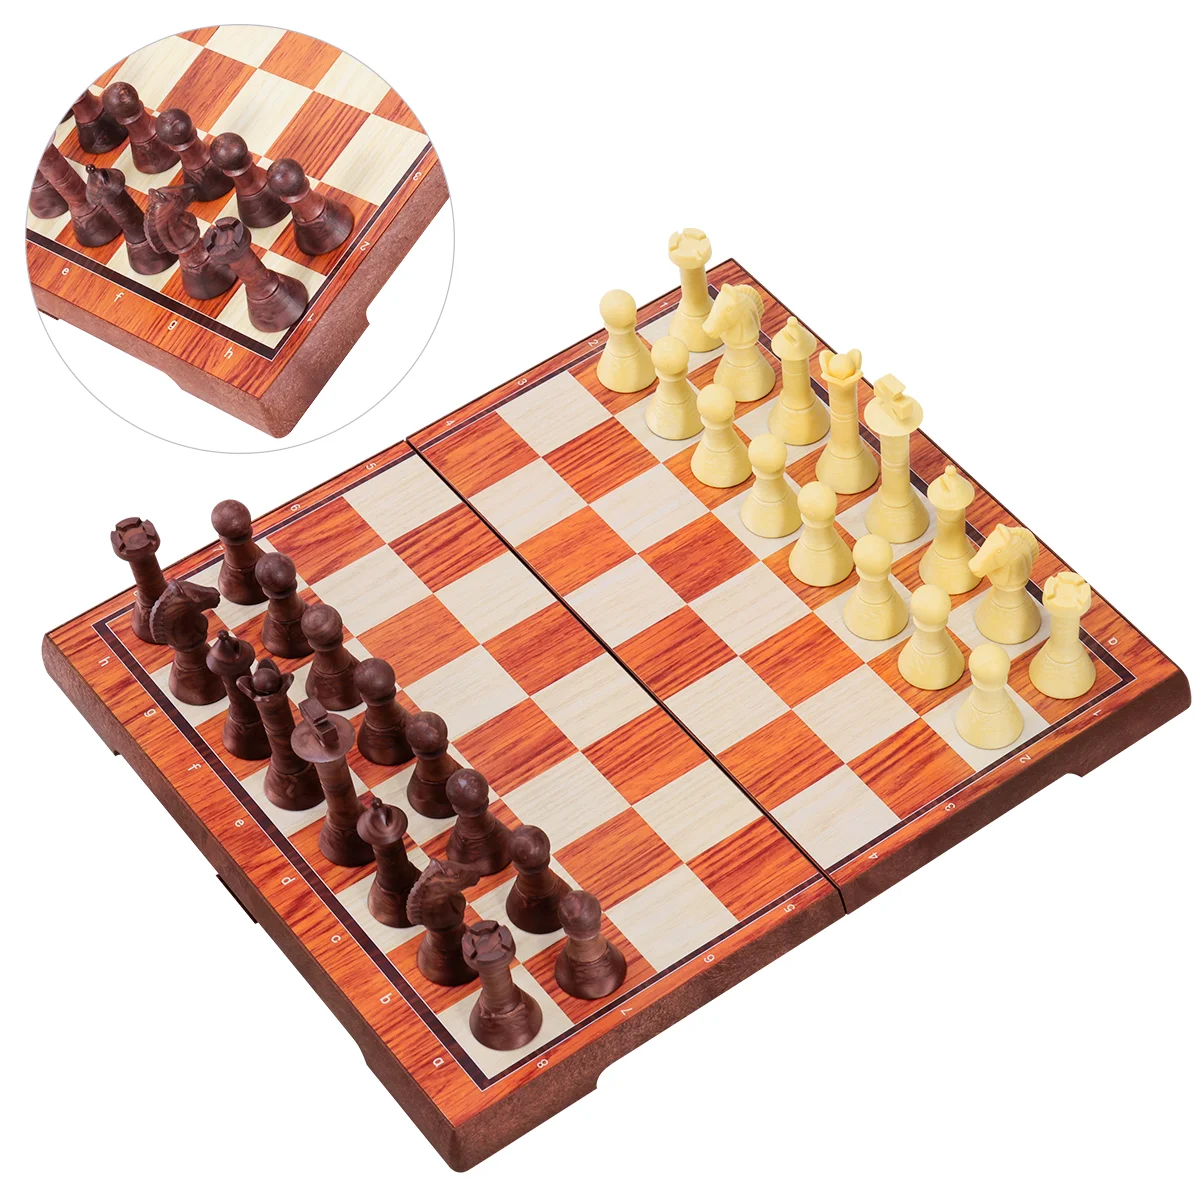 

Набор шашек iBaseToy 2 в 1, классический складной комплект настольной игры, портативный развивающий набор для детей и взрослых